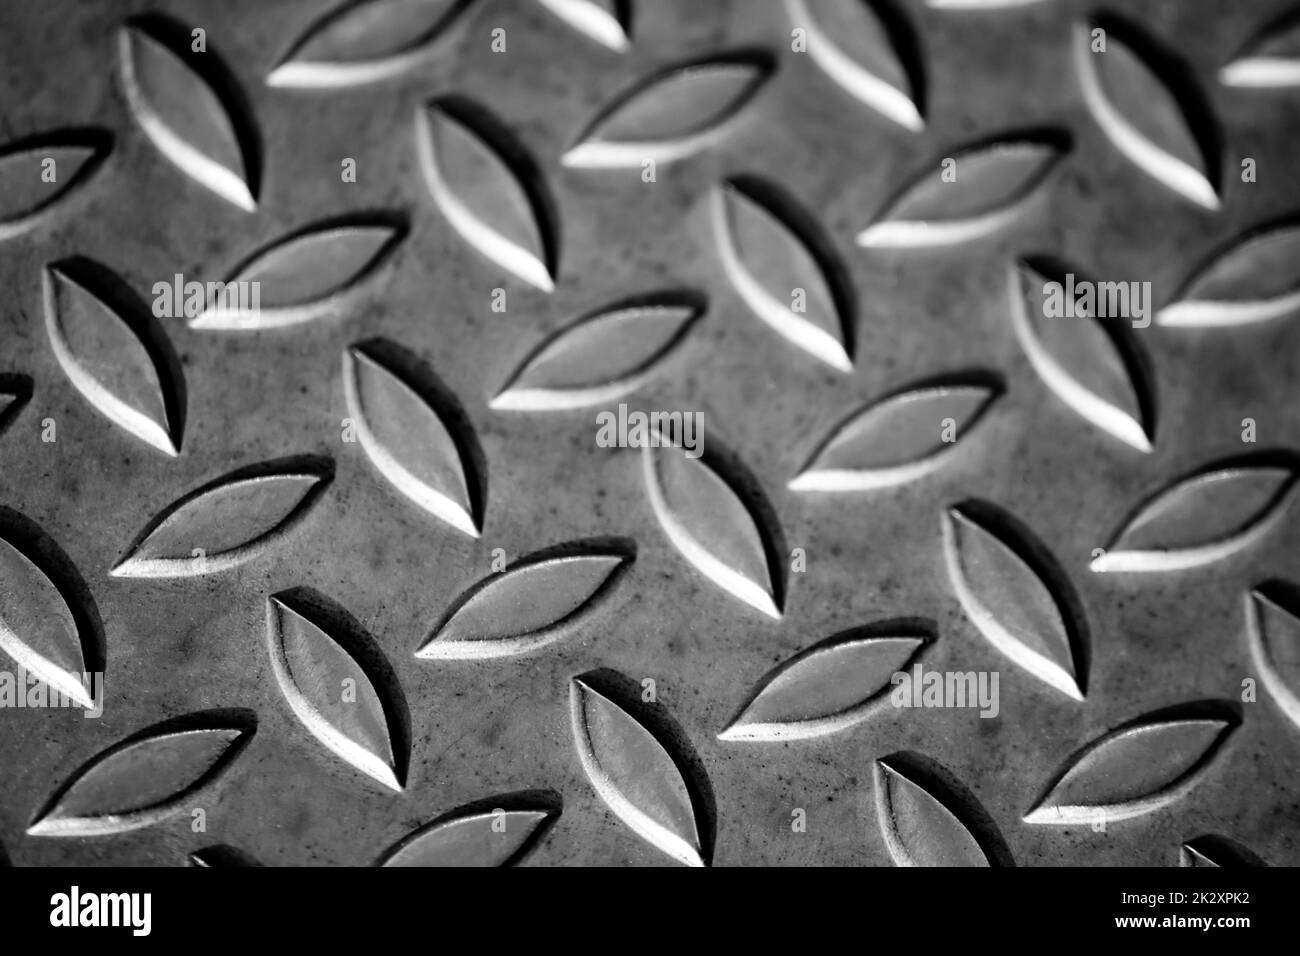 La superficie della piastra in metallo diamantato pieno mostra pavimenti in acciaio inossidabile nella fabbricazione industriale come fondo a vapore per scale in metallo e piastre in acciaio pesante per la protezione e veicoli militari pesanti Foto Stock